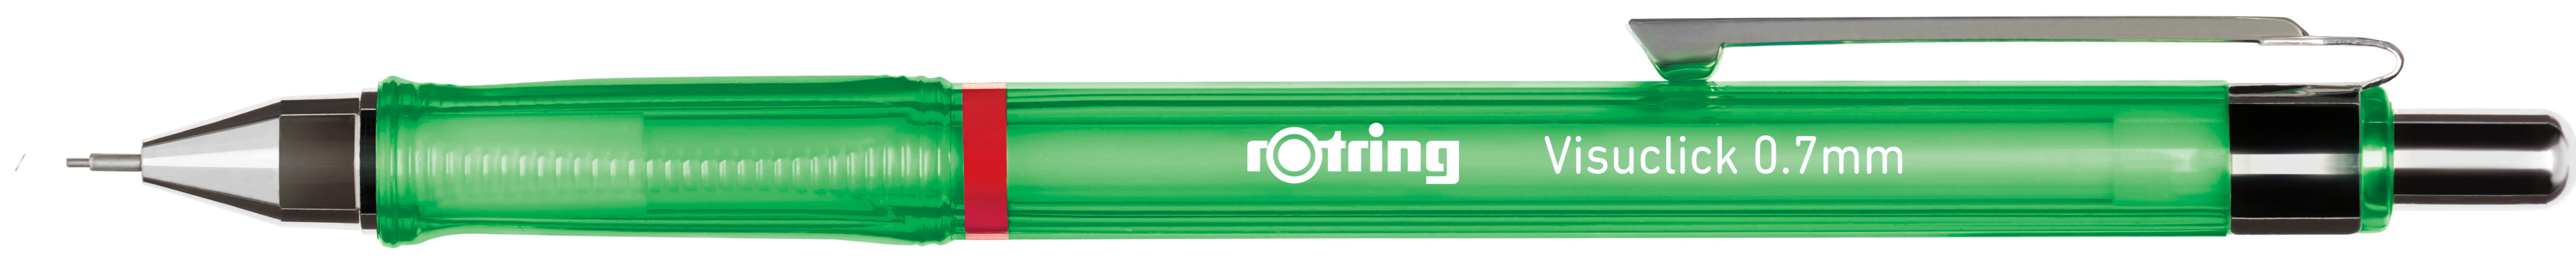 ROTRING Portemines 0.7mm 2088550 Visuclick, vert